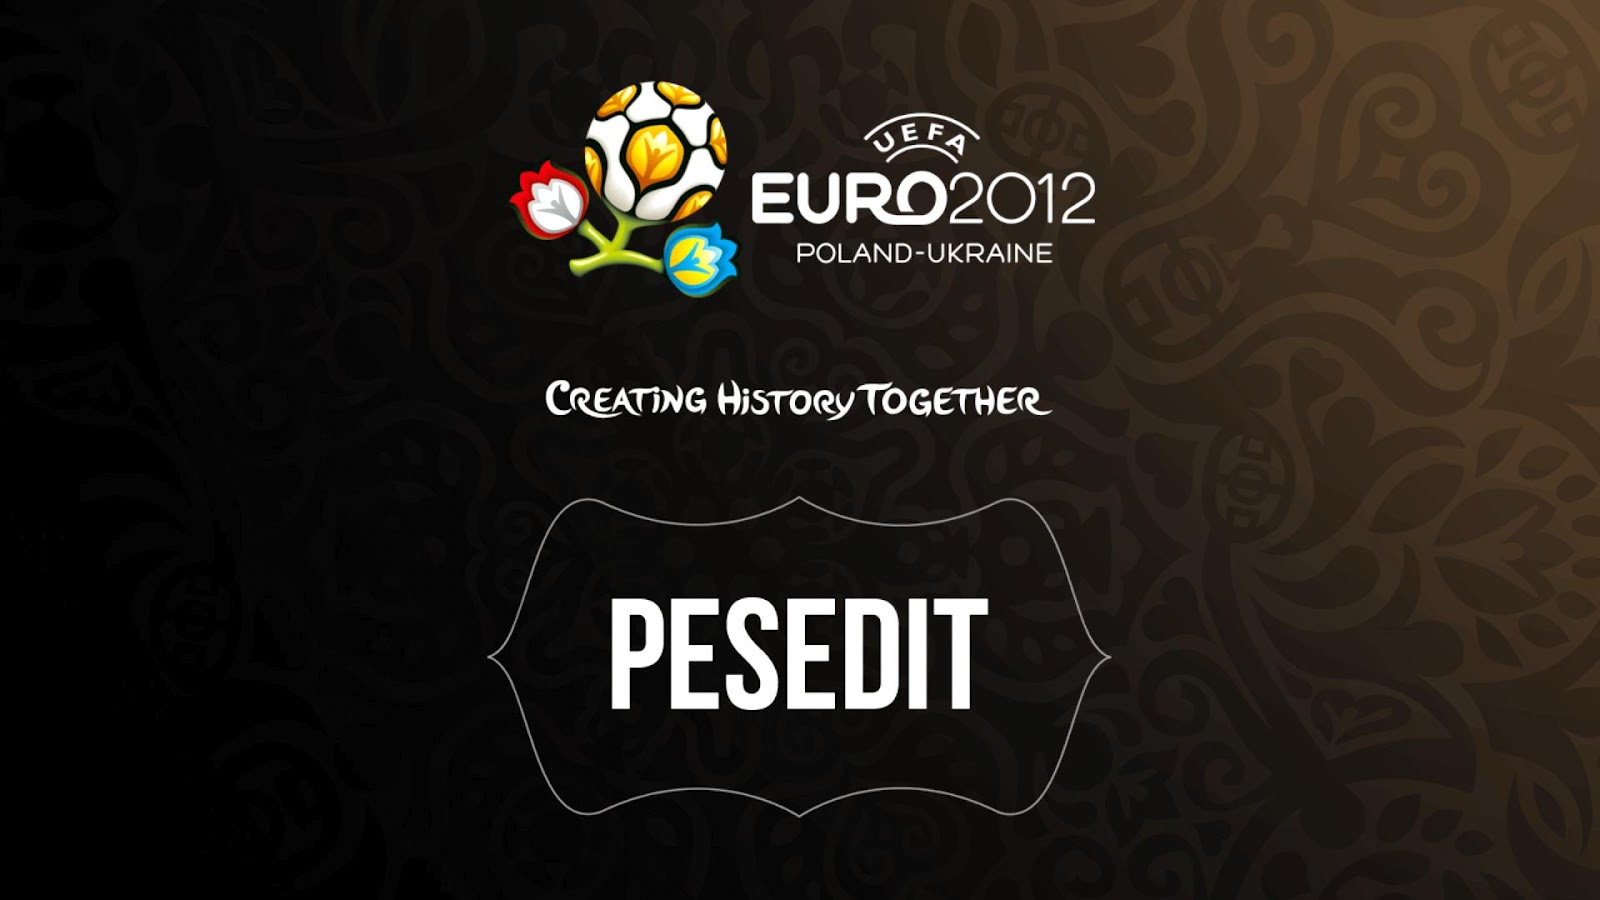 حصريا باتش EURO 2012 على المديا فاير والجامبو فايلز الاصدار الاول والتحديث الثانى والثالث  Pes2012+2012-06-04+20-50-13-96